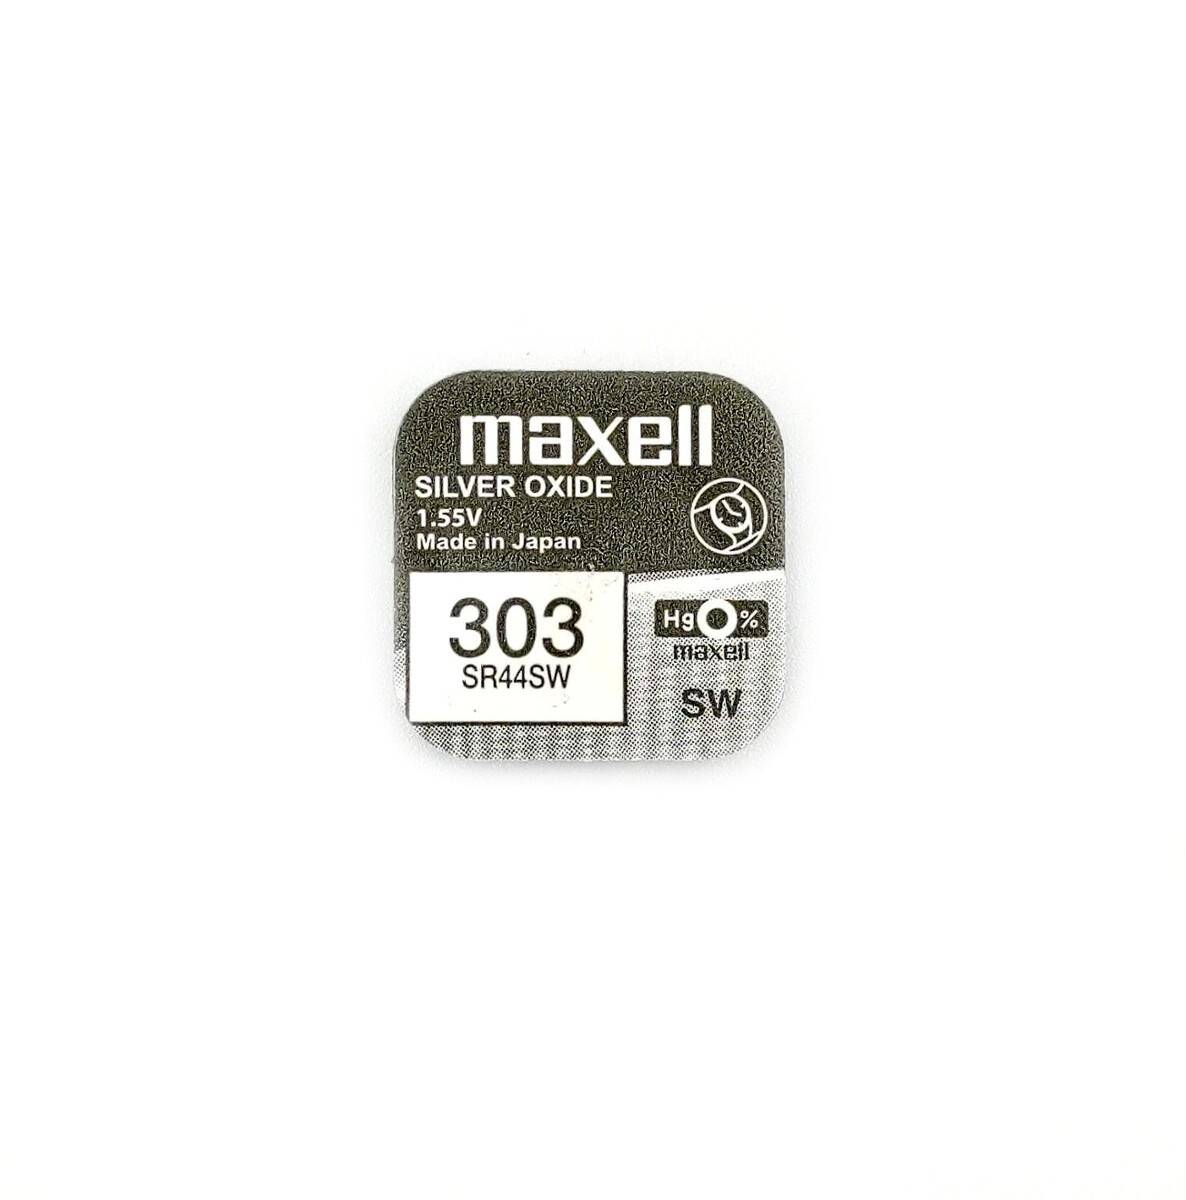 MAXELL bateria srebrowa SR44SW 1,55V do przyrządów pomiarowych (zamiennik LR44) (Zdjęcie 1)